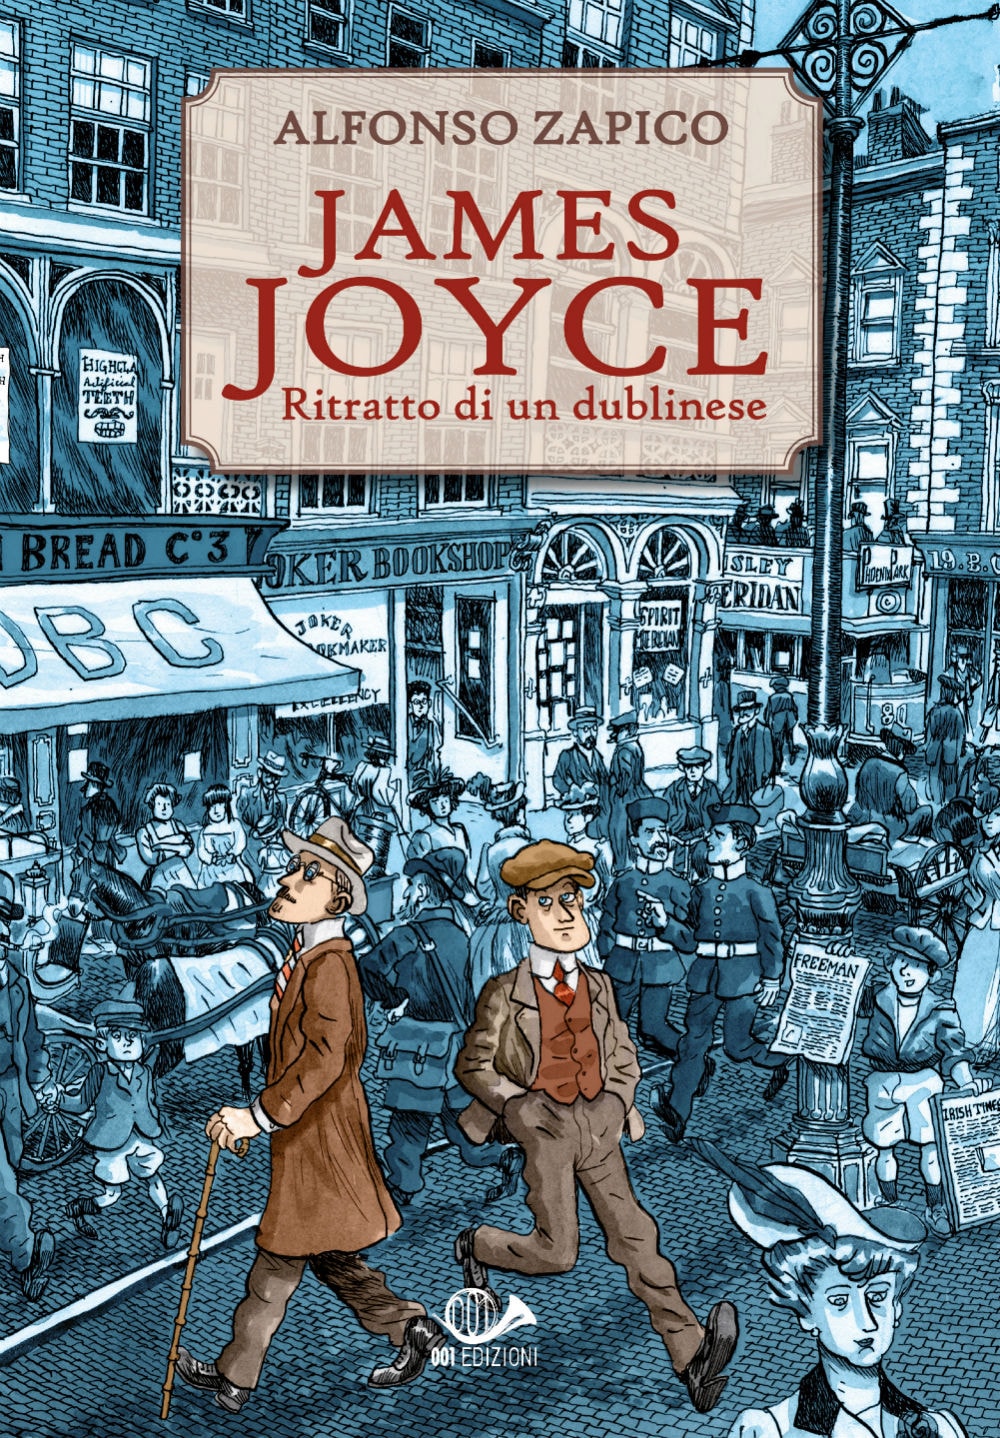 "JAMES JOYCE. RITRATTO DI UN DUBLINESE" testi e disegni di Alfonso Zapico, pubblicato da 001 Edizioni.